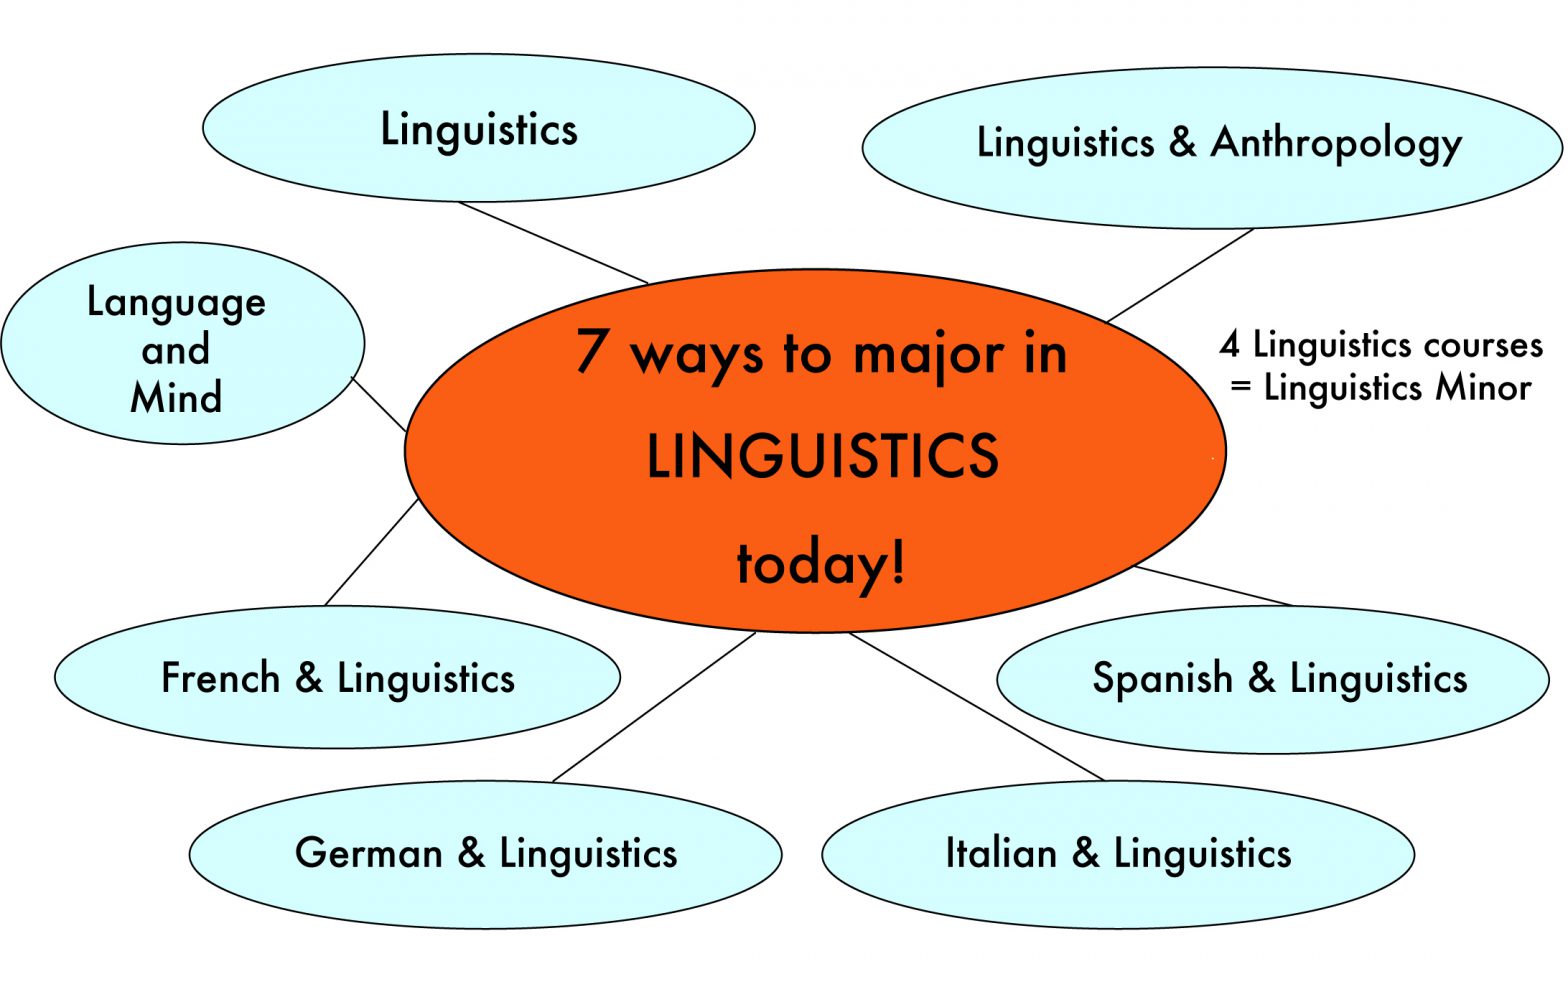 linguistics research jobs